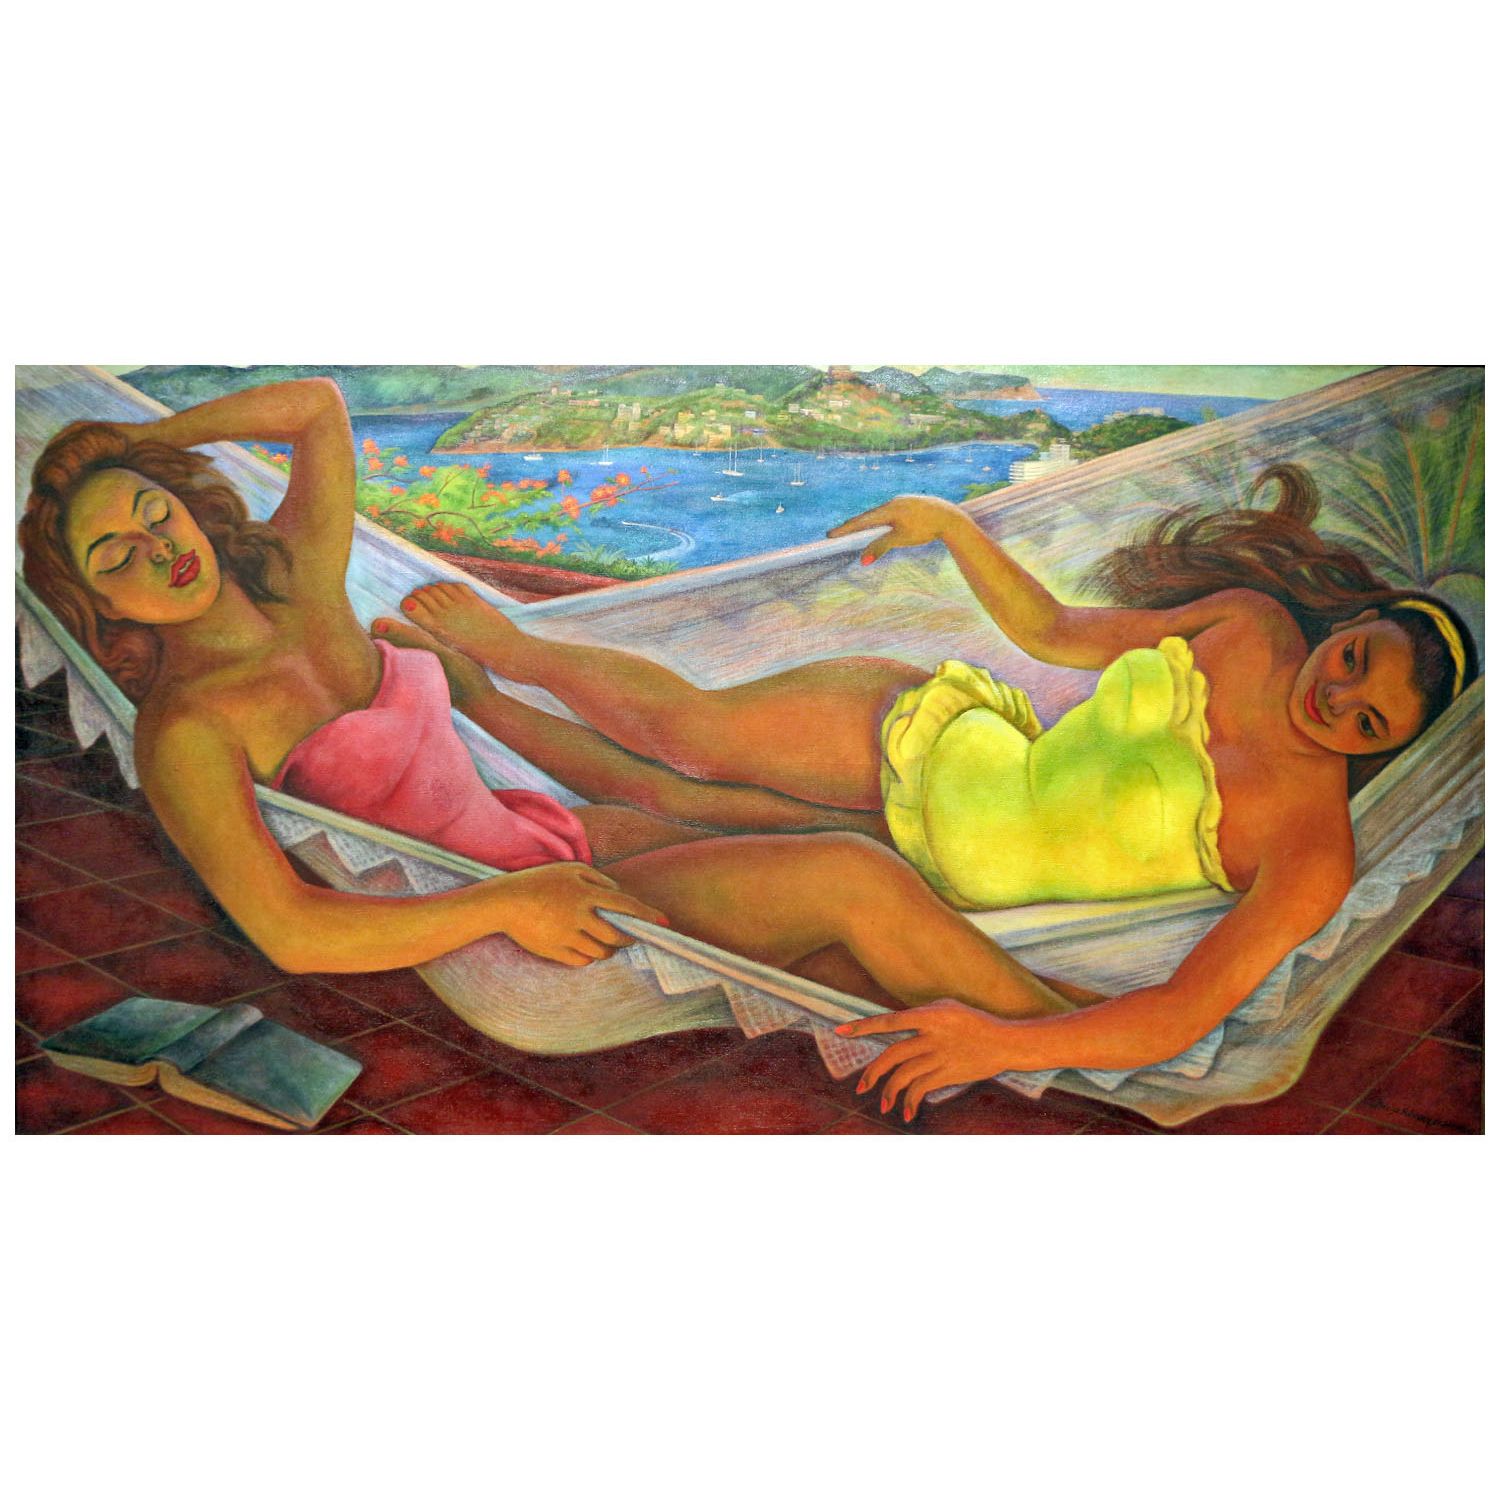 Diego Rivera. The Hammock. 1956. Museo Dolores Olmedo